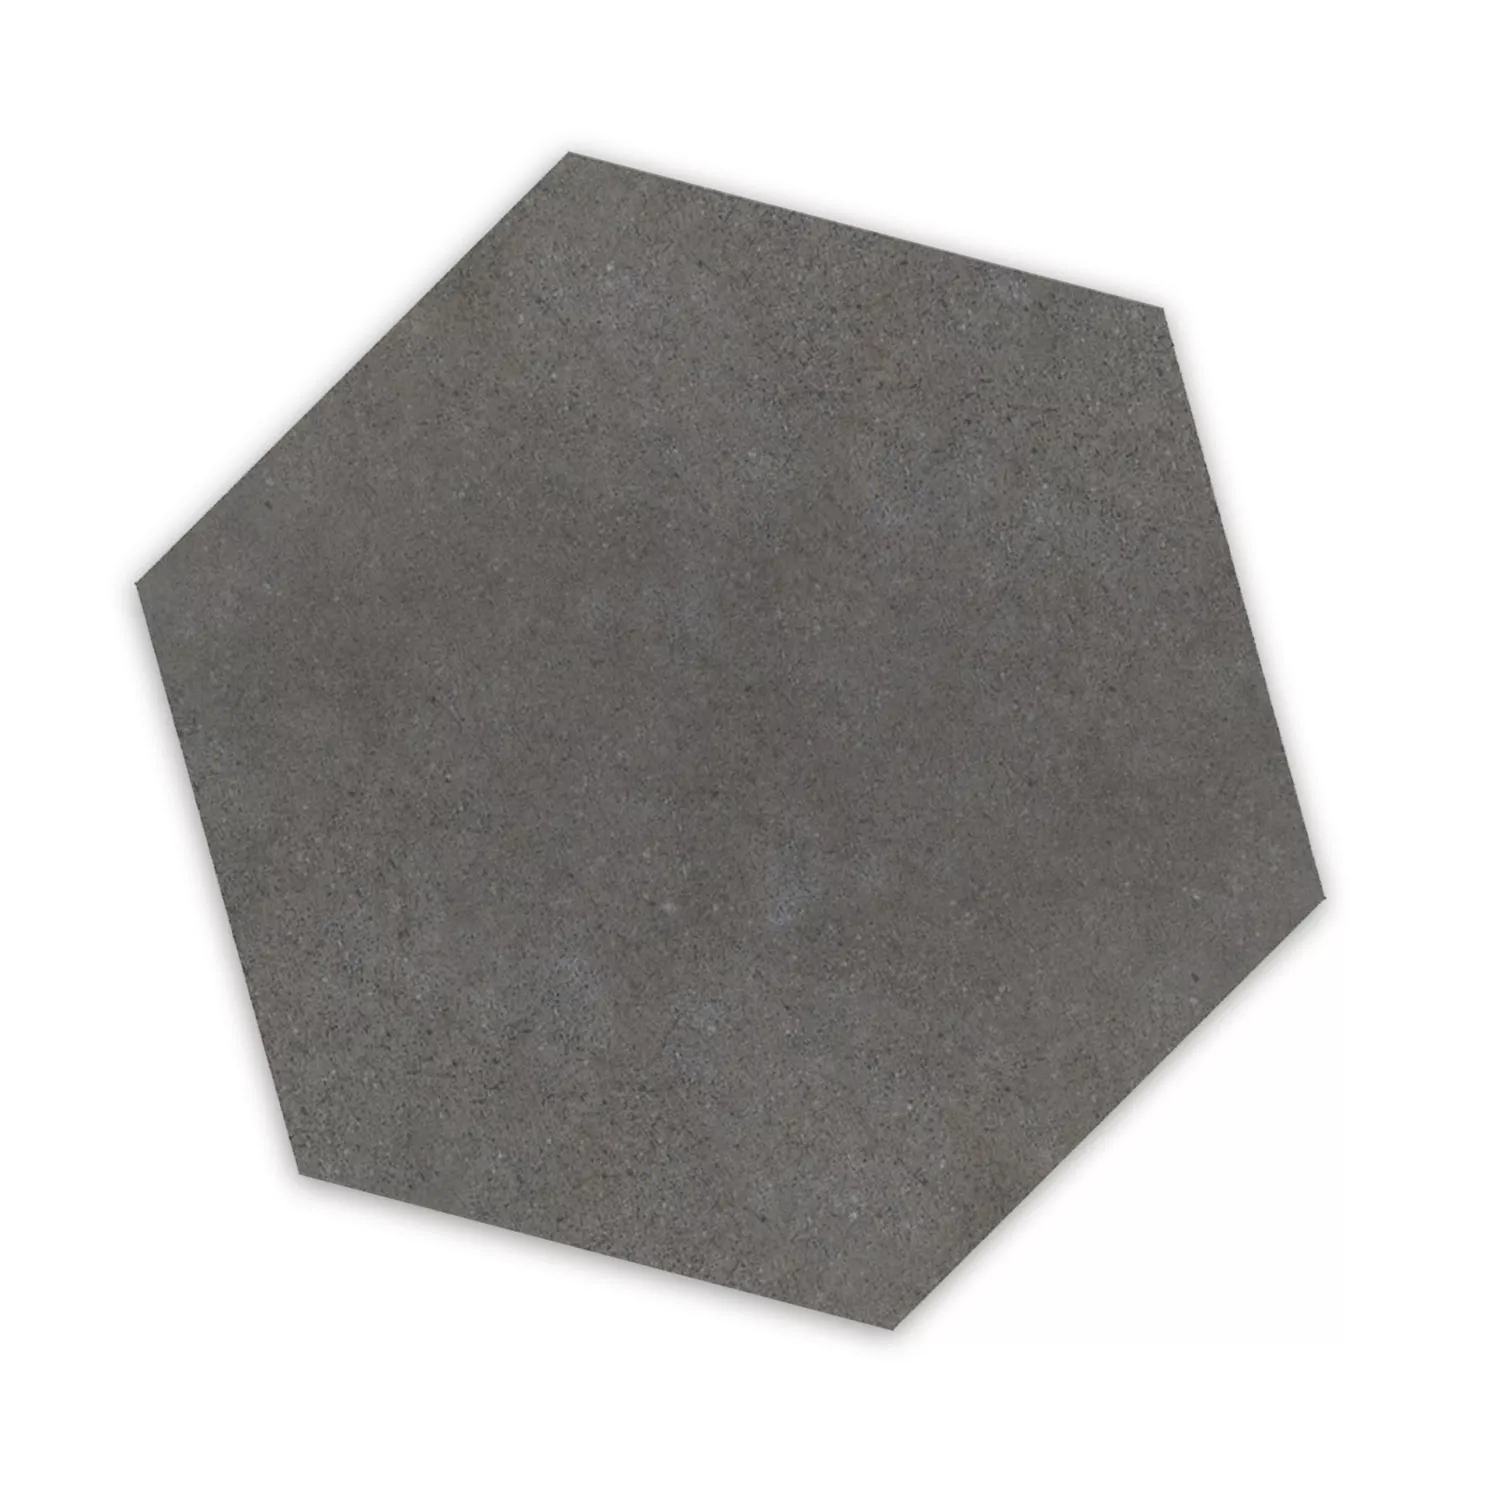 Cement Tiles Optic Hexagon Floor Tiles Alicante Dark Grey